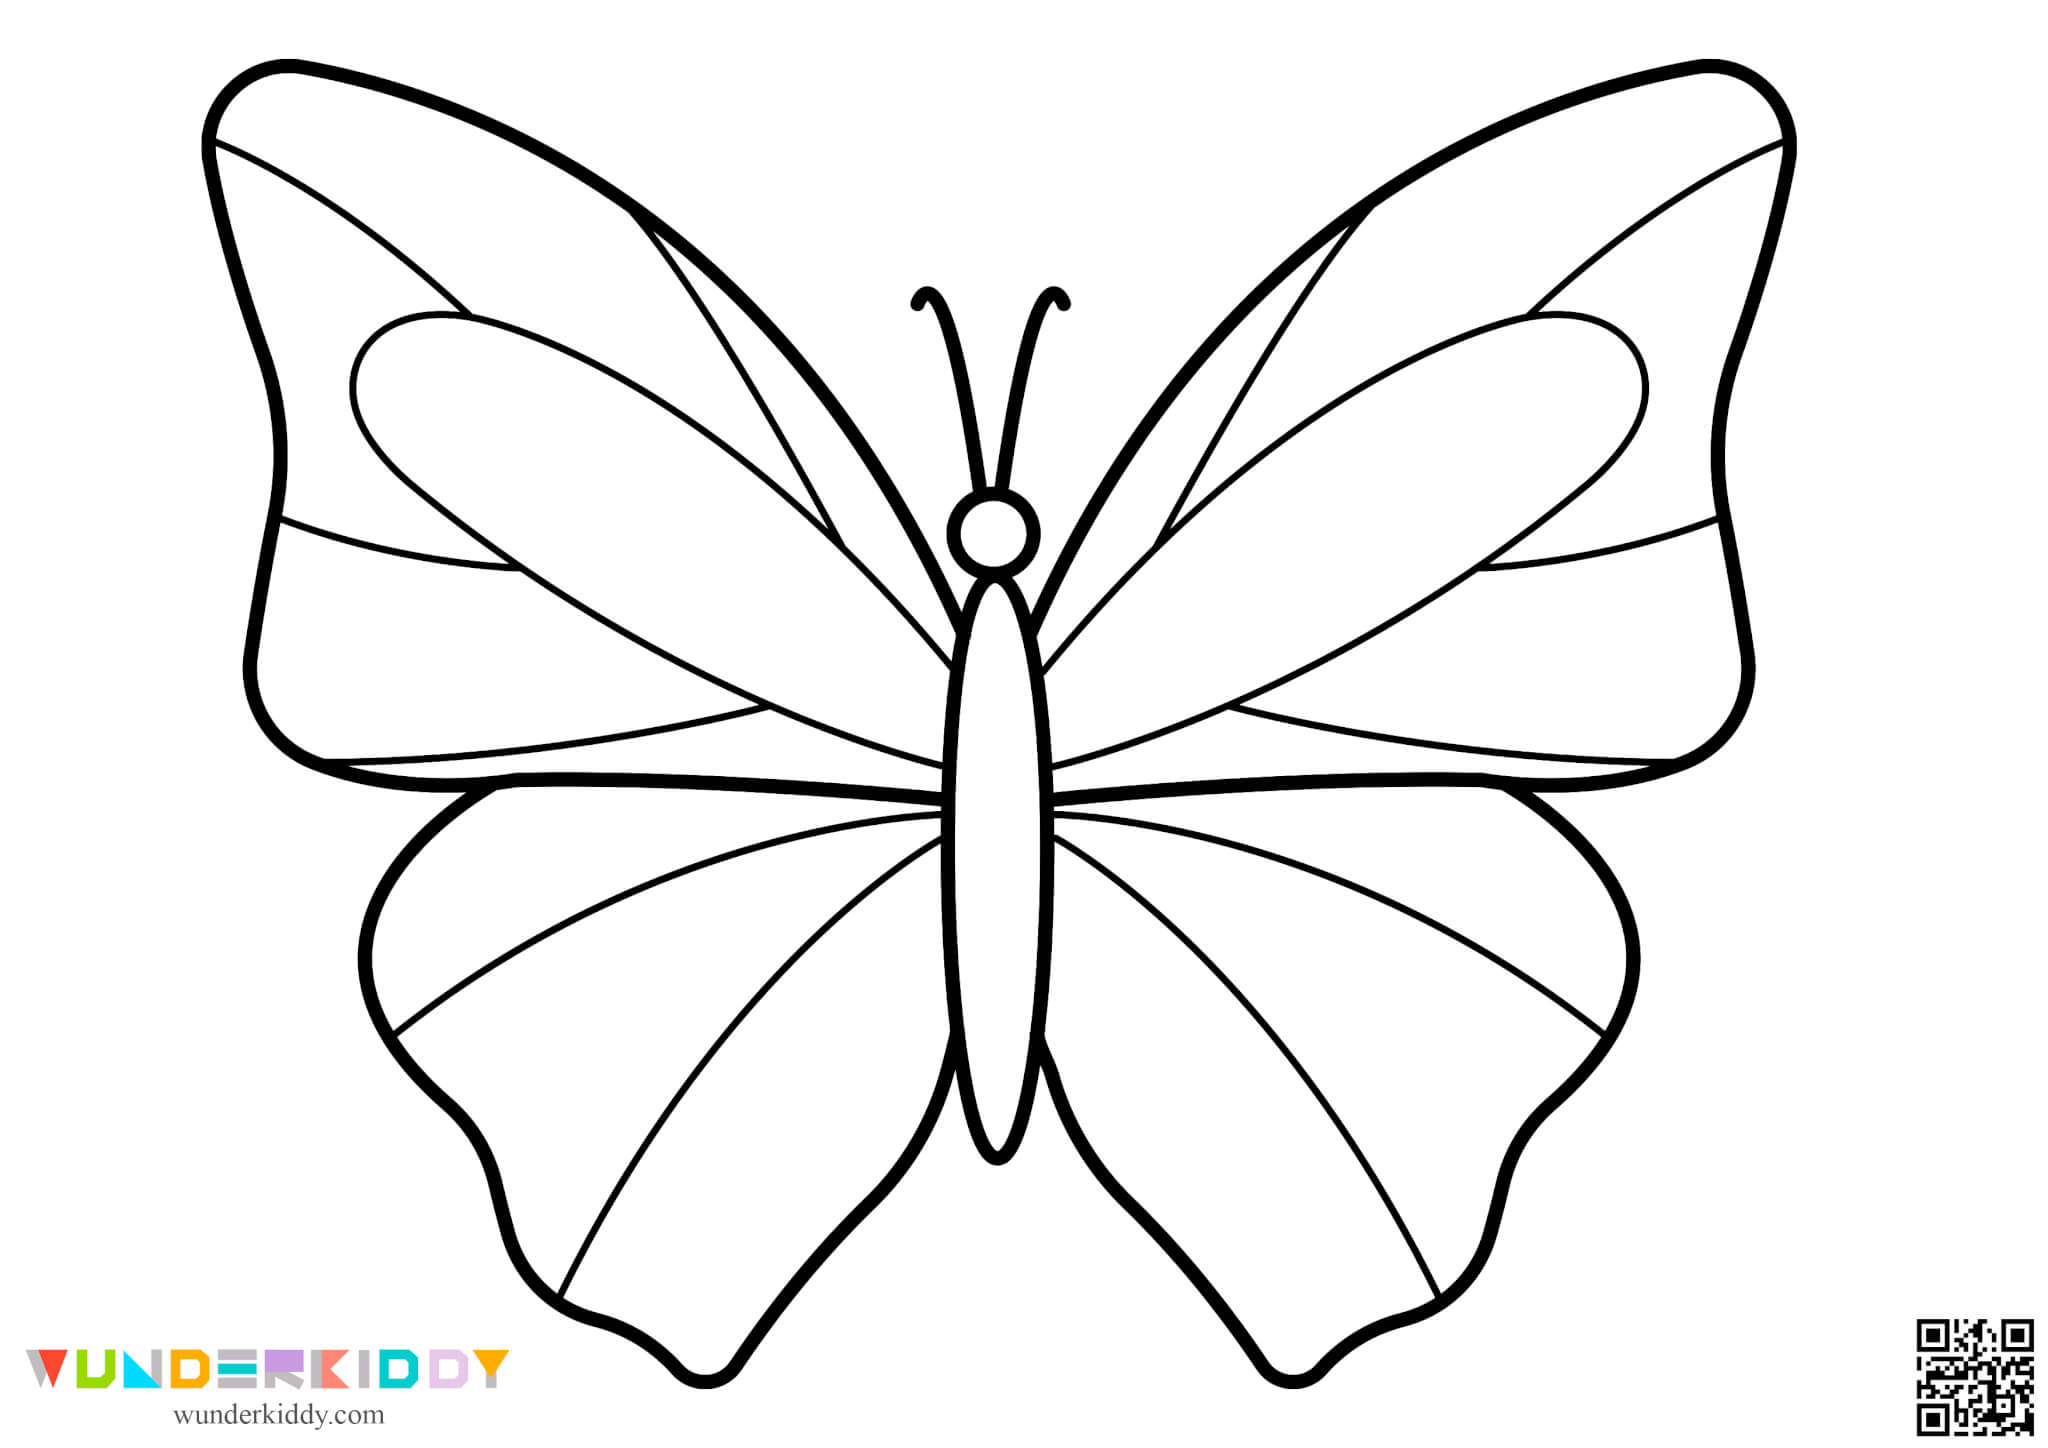 Шаблолоны бабочек для творчества - Изображение 14